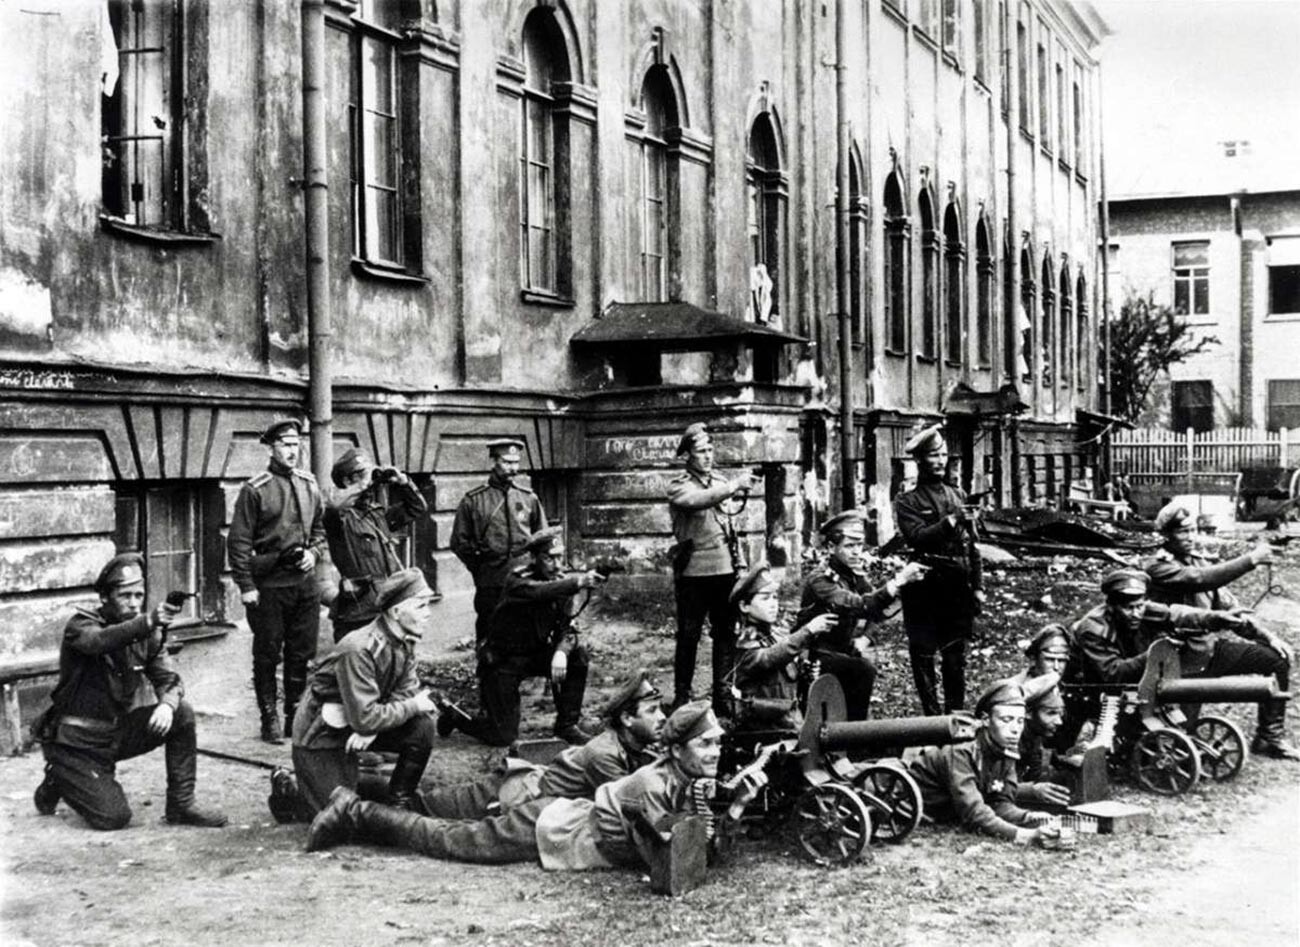 Soldati rivoluzionari a Pietrogrado, 1917
